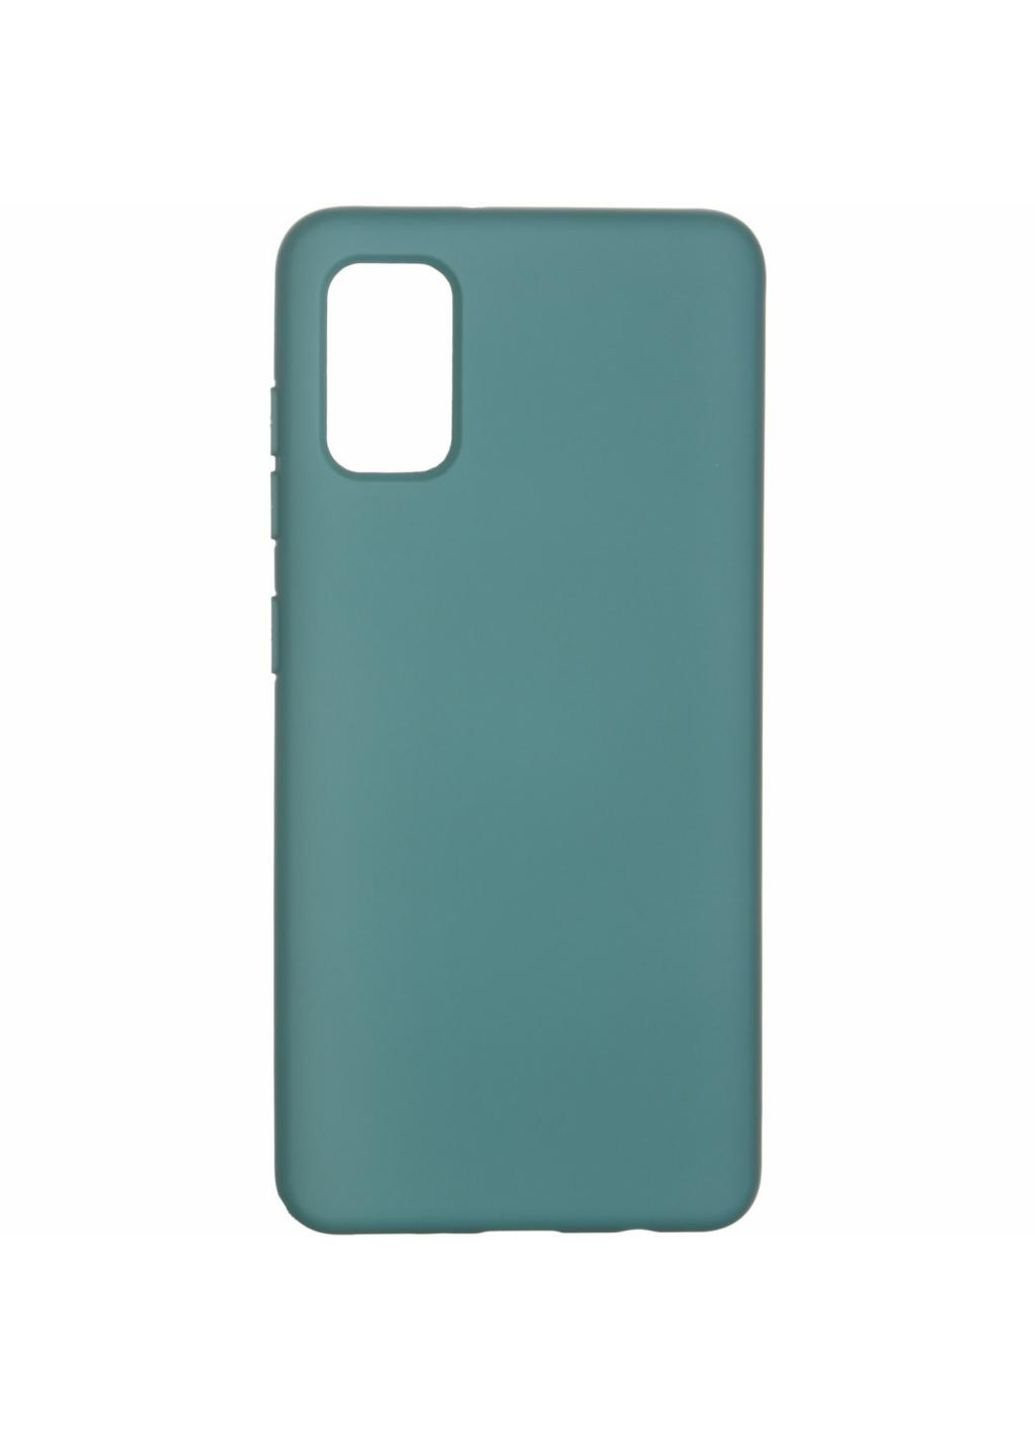 Чехол для мобильного телефона (смартфона) ICON Case for Samsung A41 Pine Green (ARM56578) ArmorStandart (201132968)